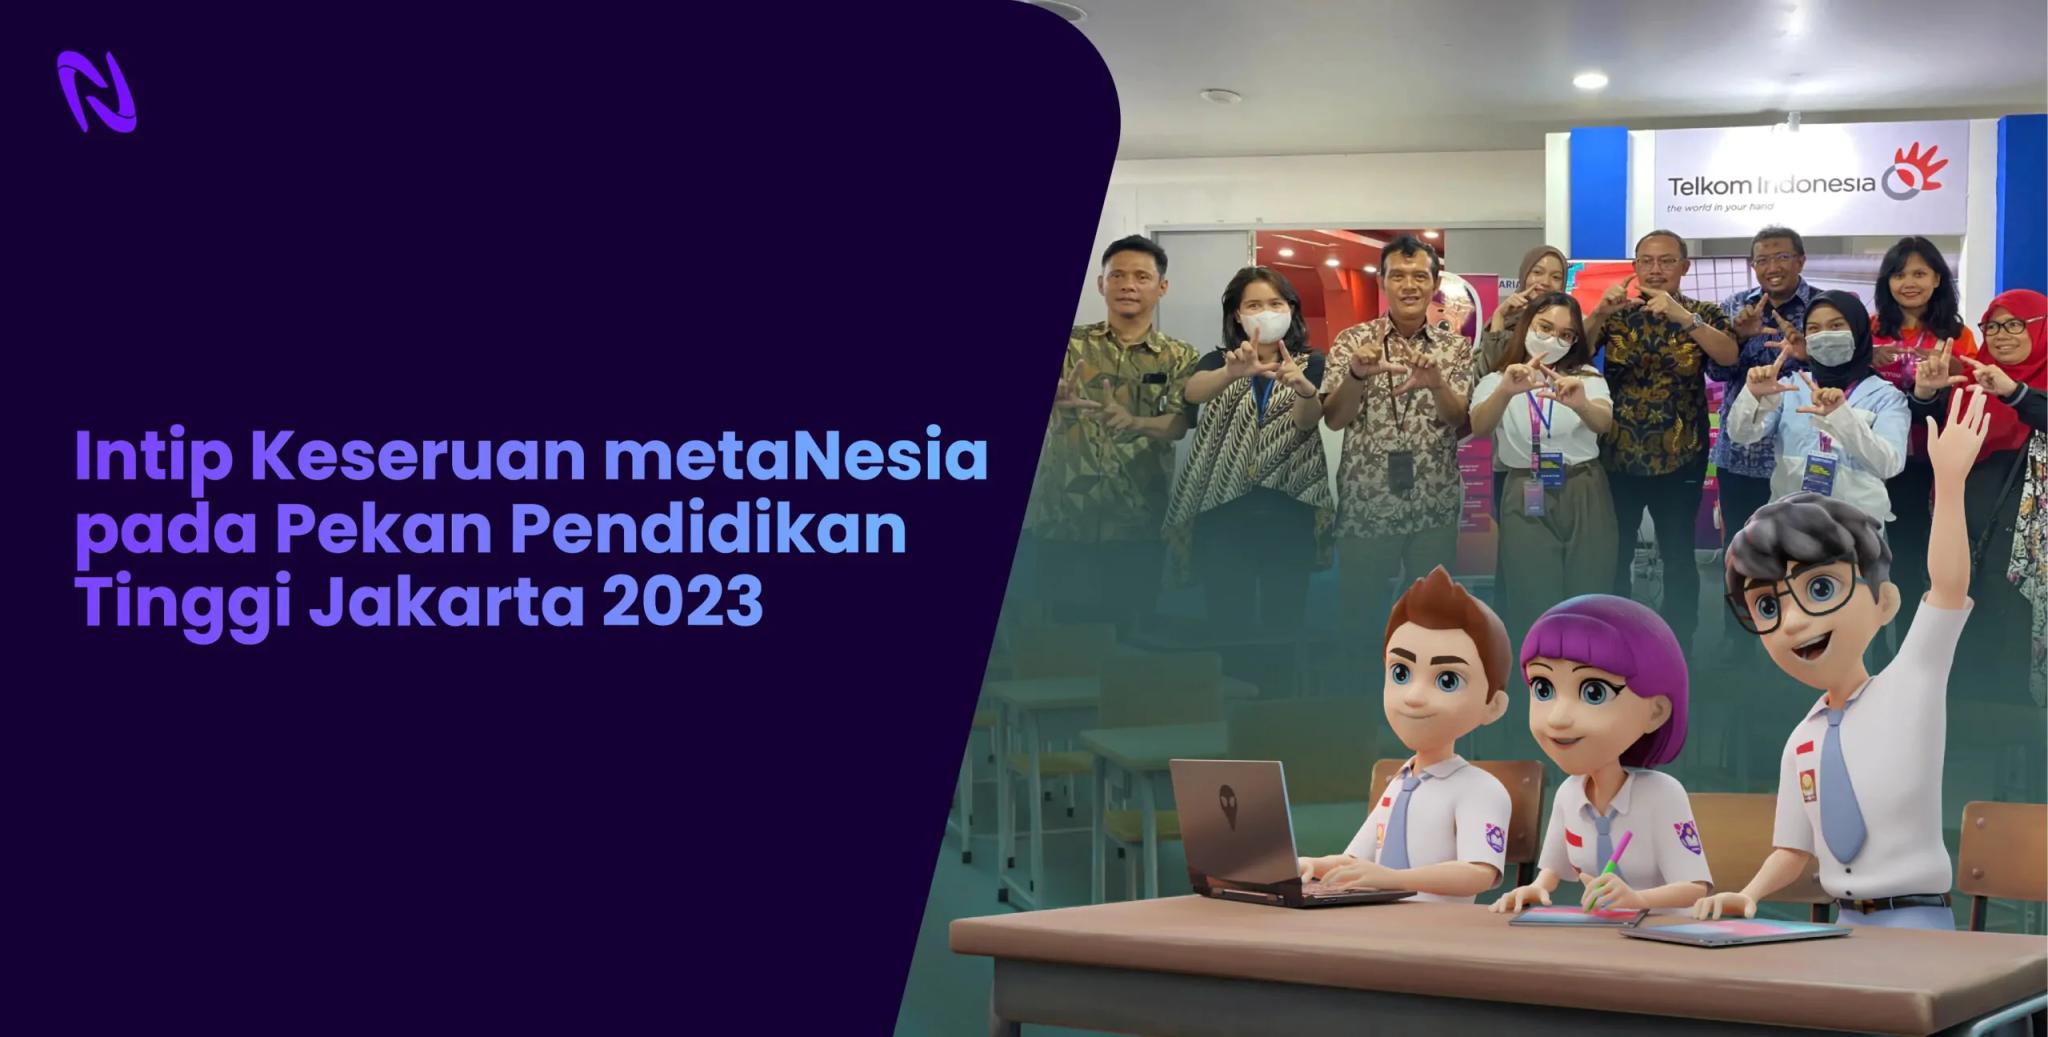 Intip Keseruan metaNesia pada Pekan Pendidikan Tinggi Jakarta 2023